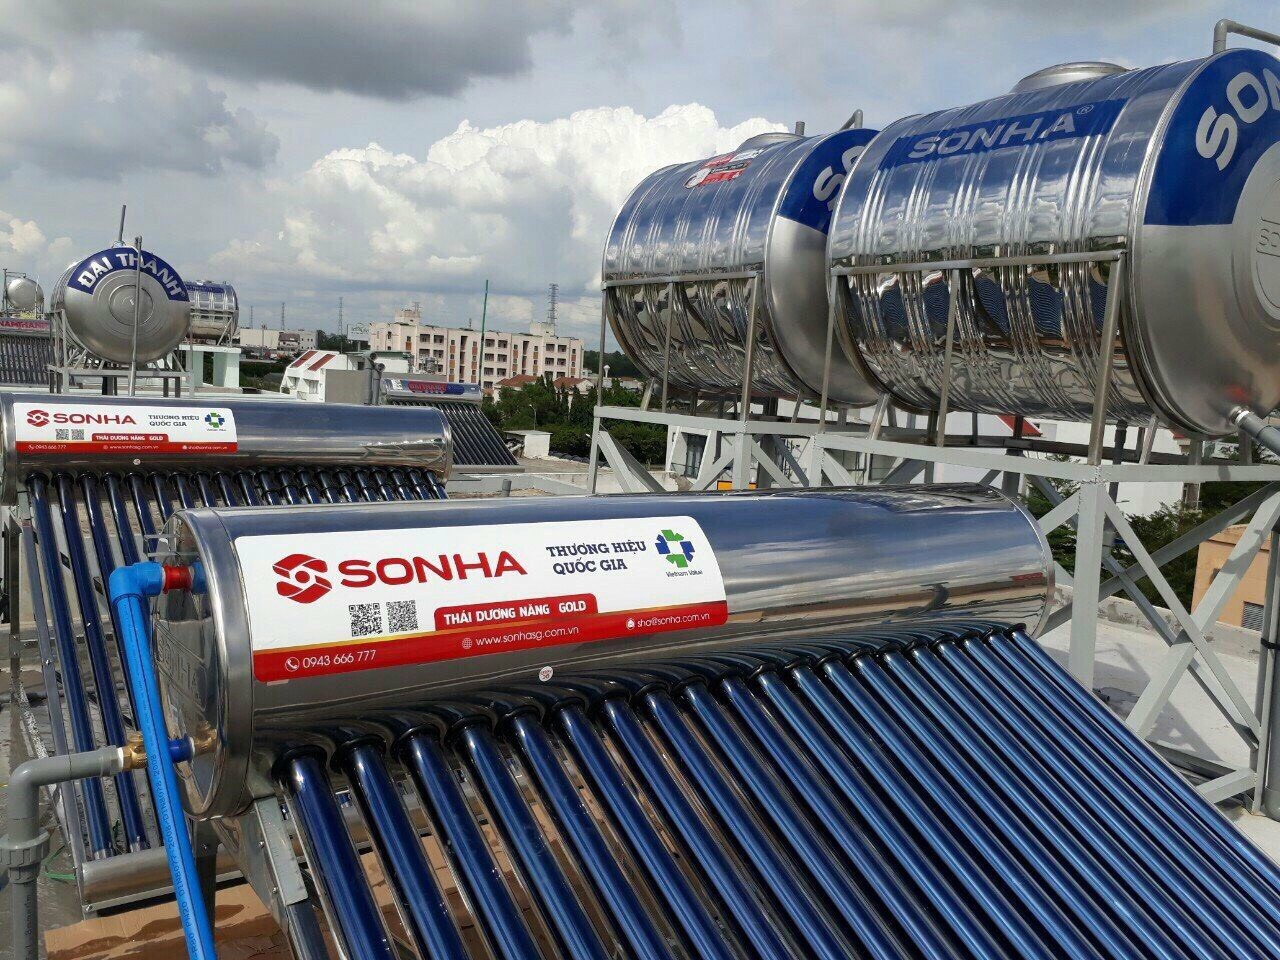 Máy nước nóng năng lượng mặt trời Thái Dương Năng Sơn Hà chính hãng